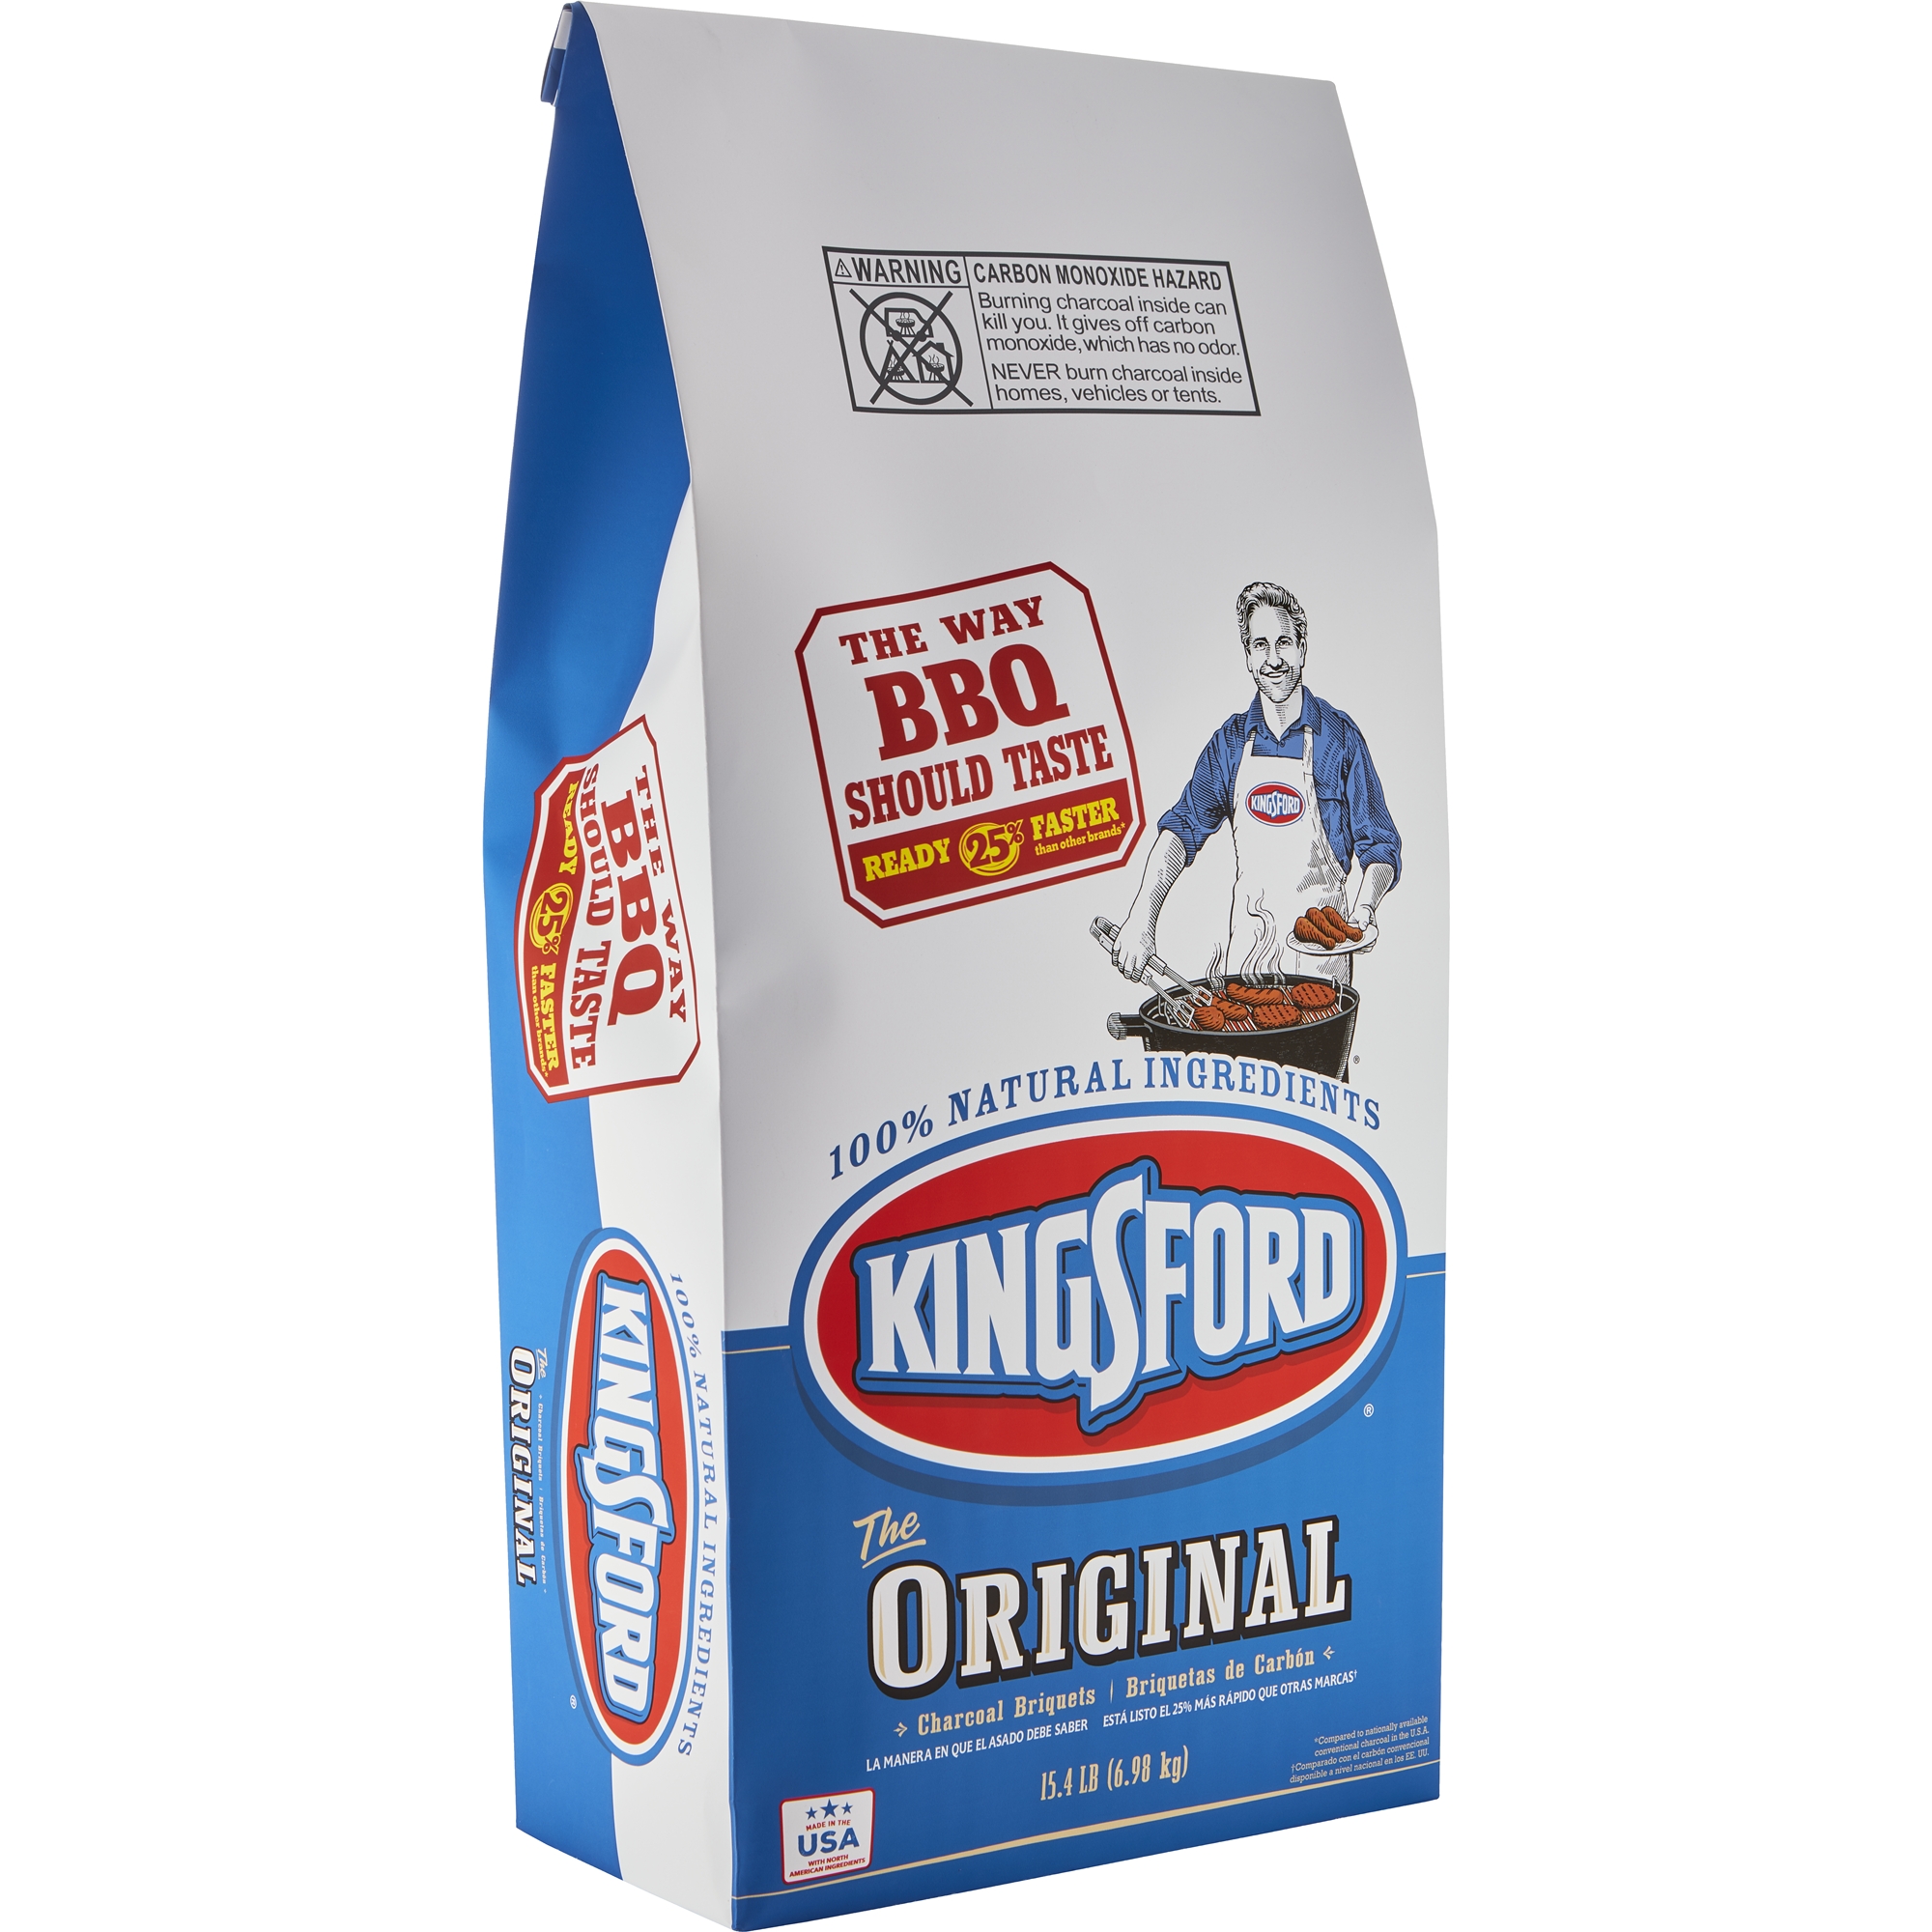 Kingsford Original Charcoal Briquettes, 15.4 lb Bag - image 1 of 10